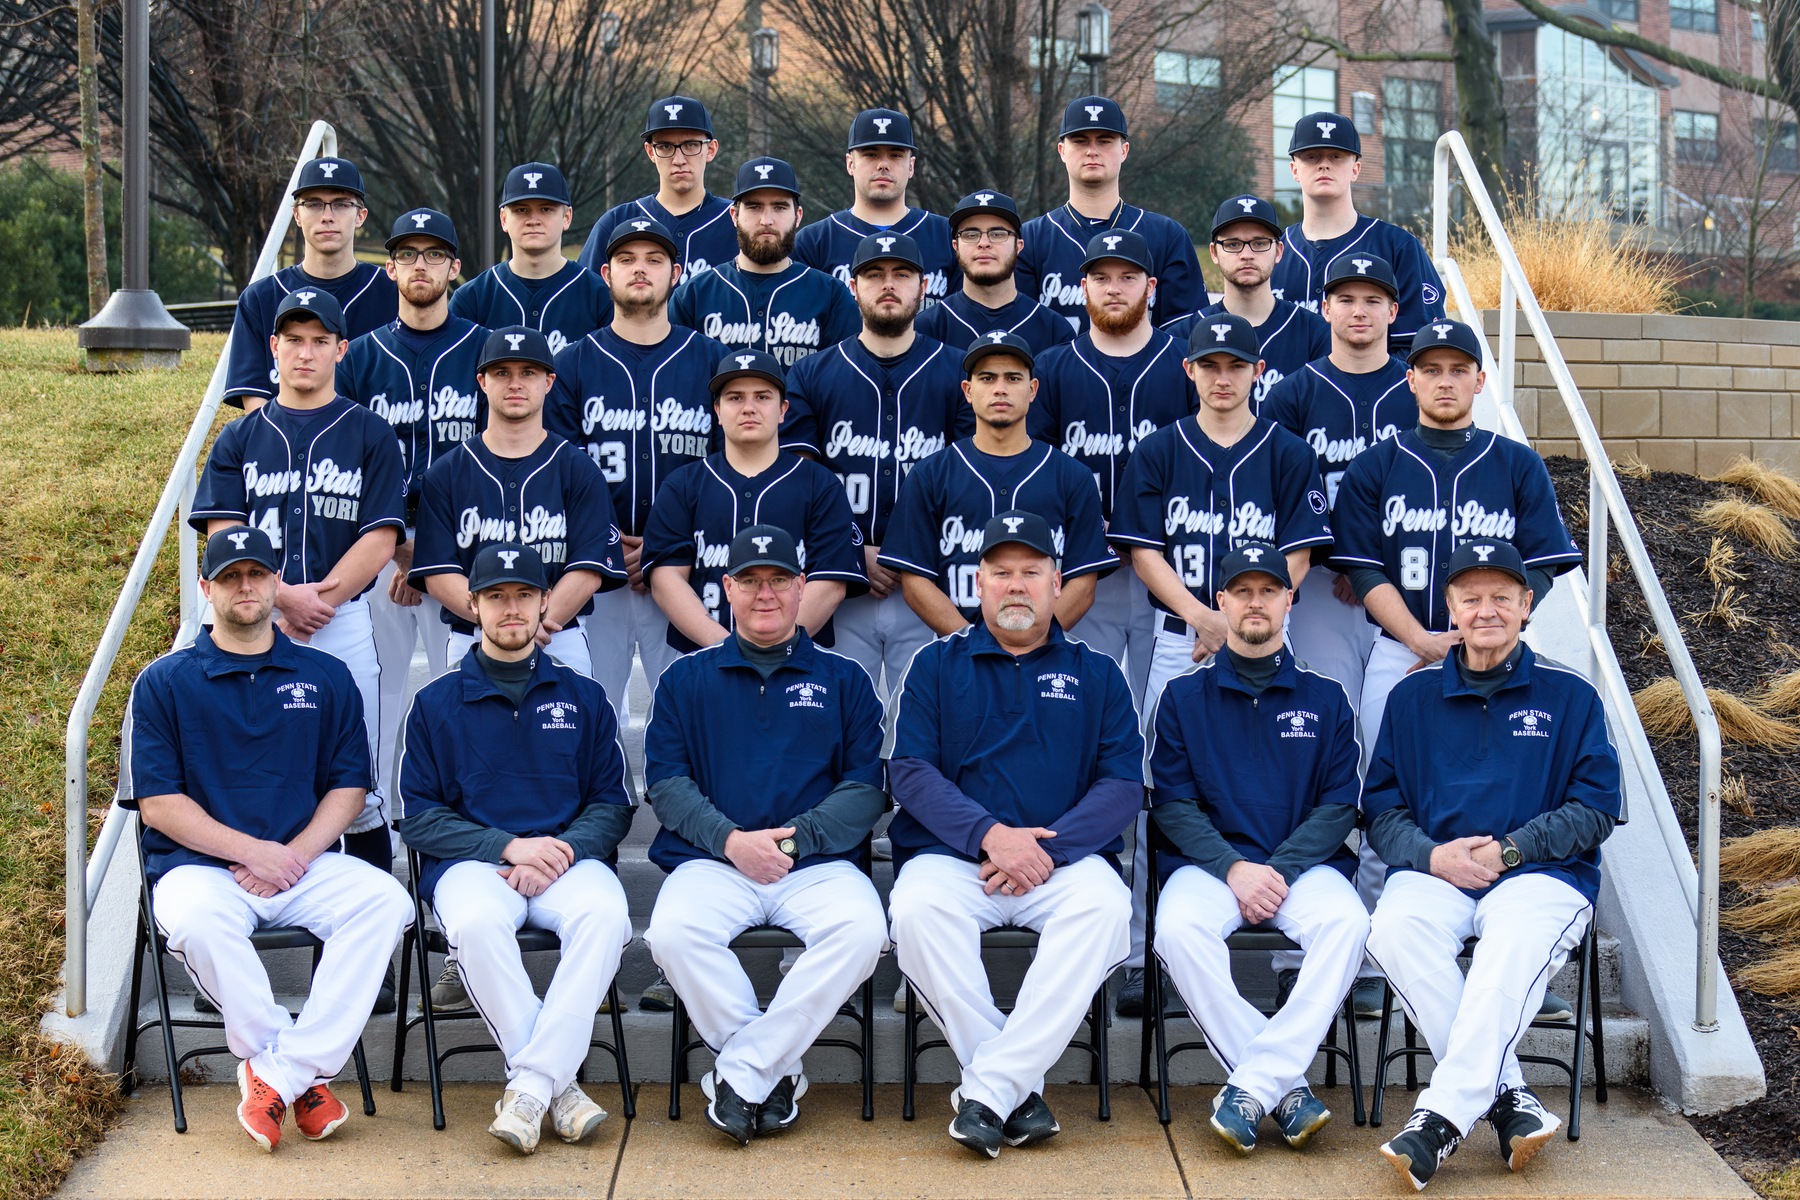 2018 Penn State York Baseball